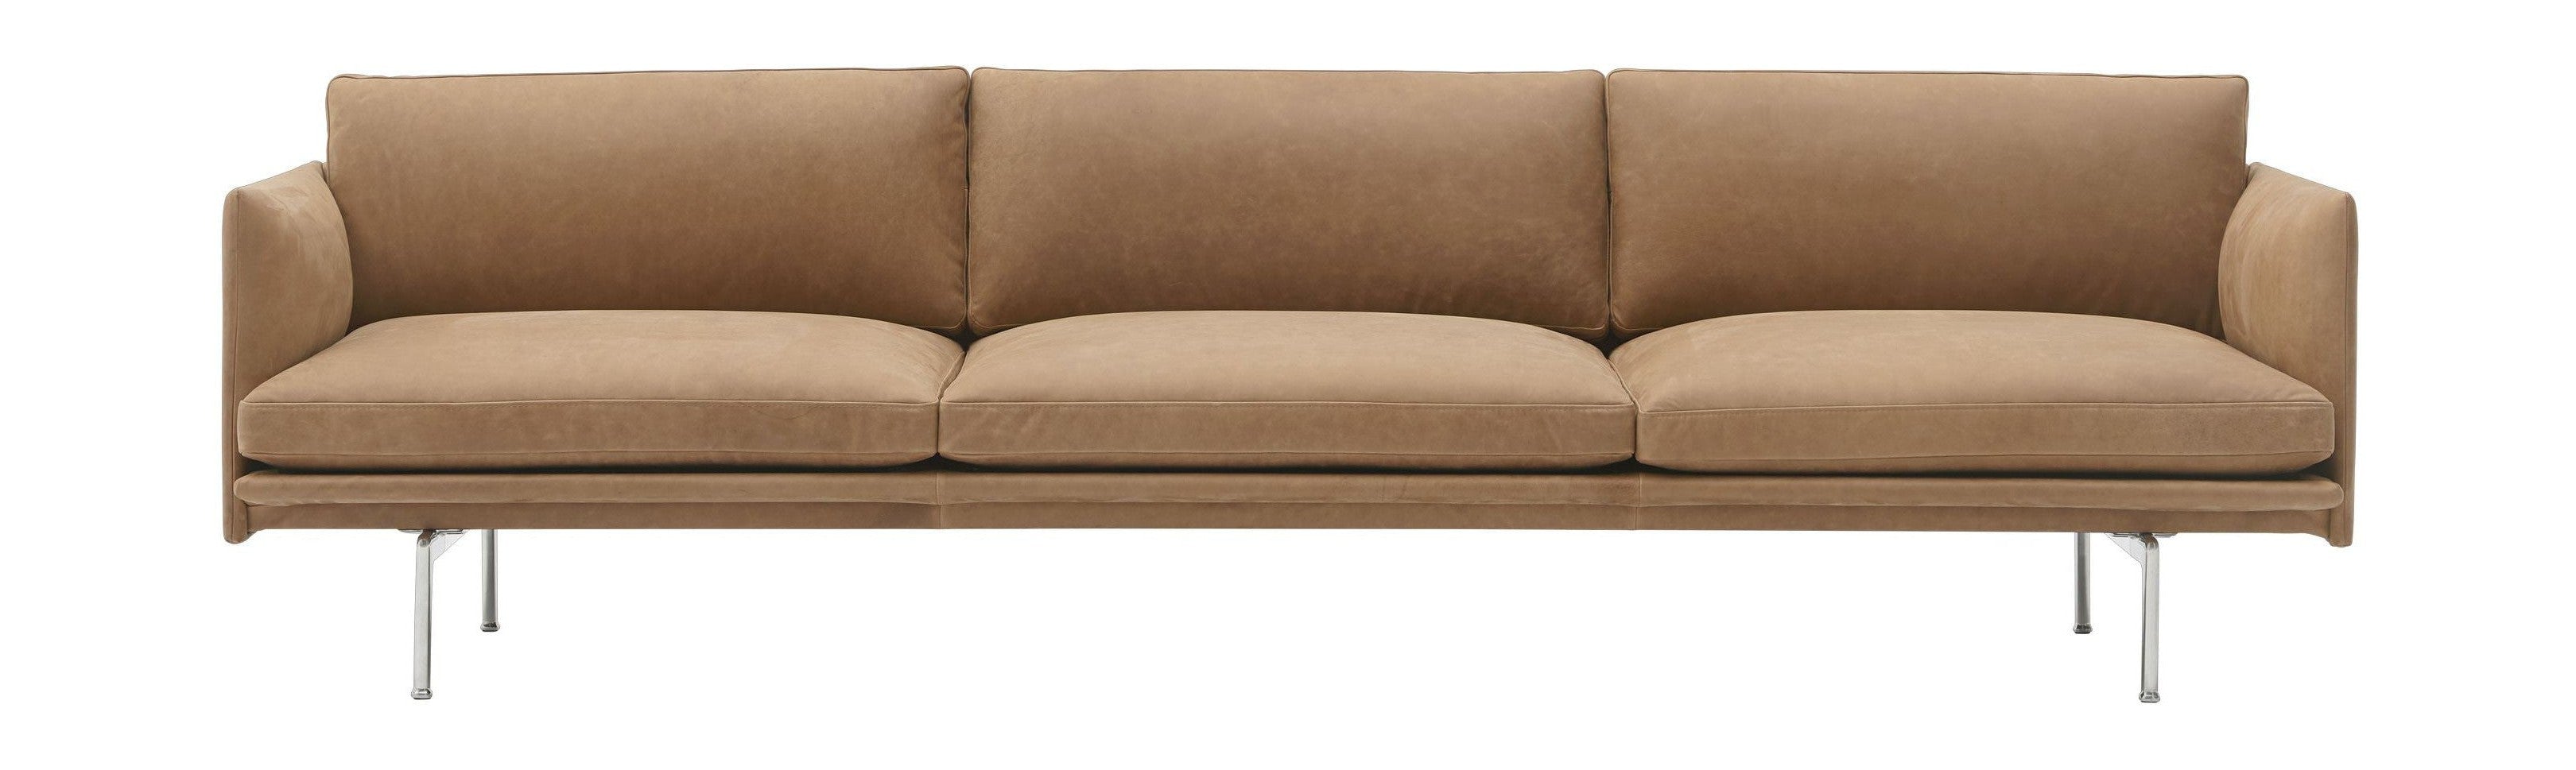 Muuto Oversigt Sofa 3 -sæder Grace Leather, Camel/Aluminium